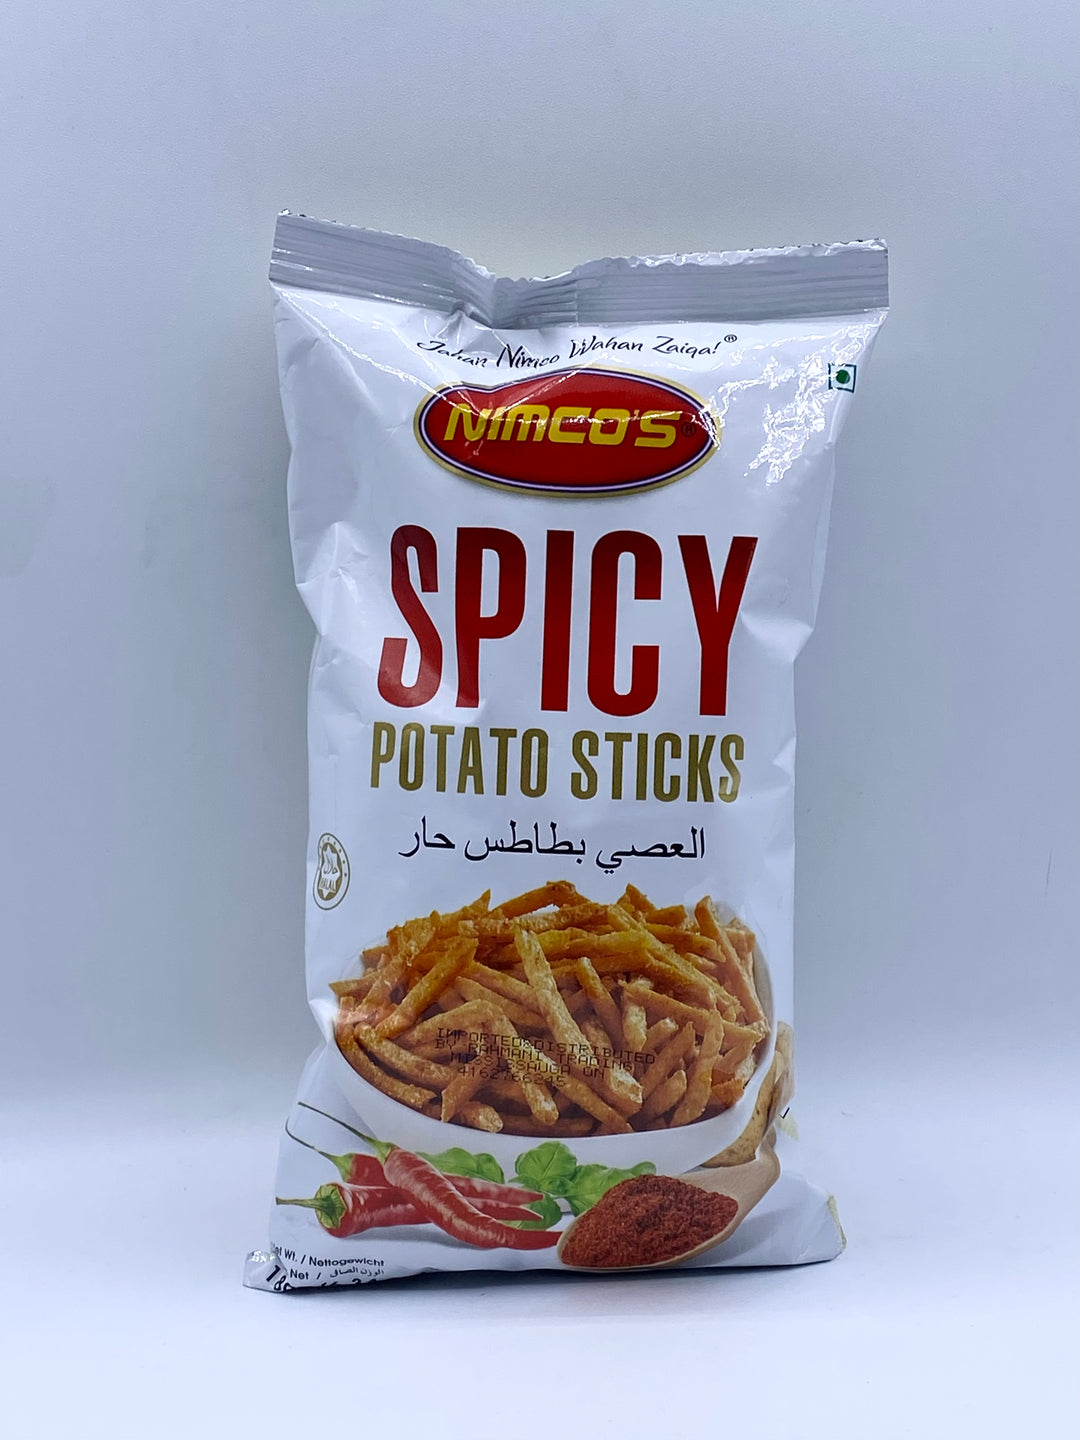 Nimco Snack Potato Stick Spicy